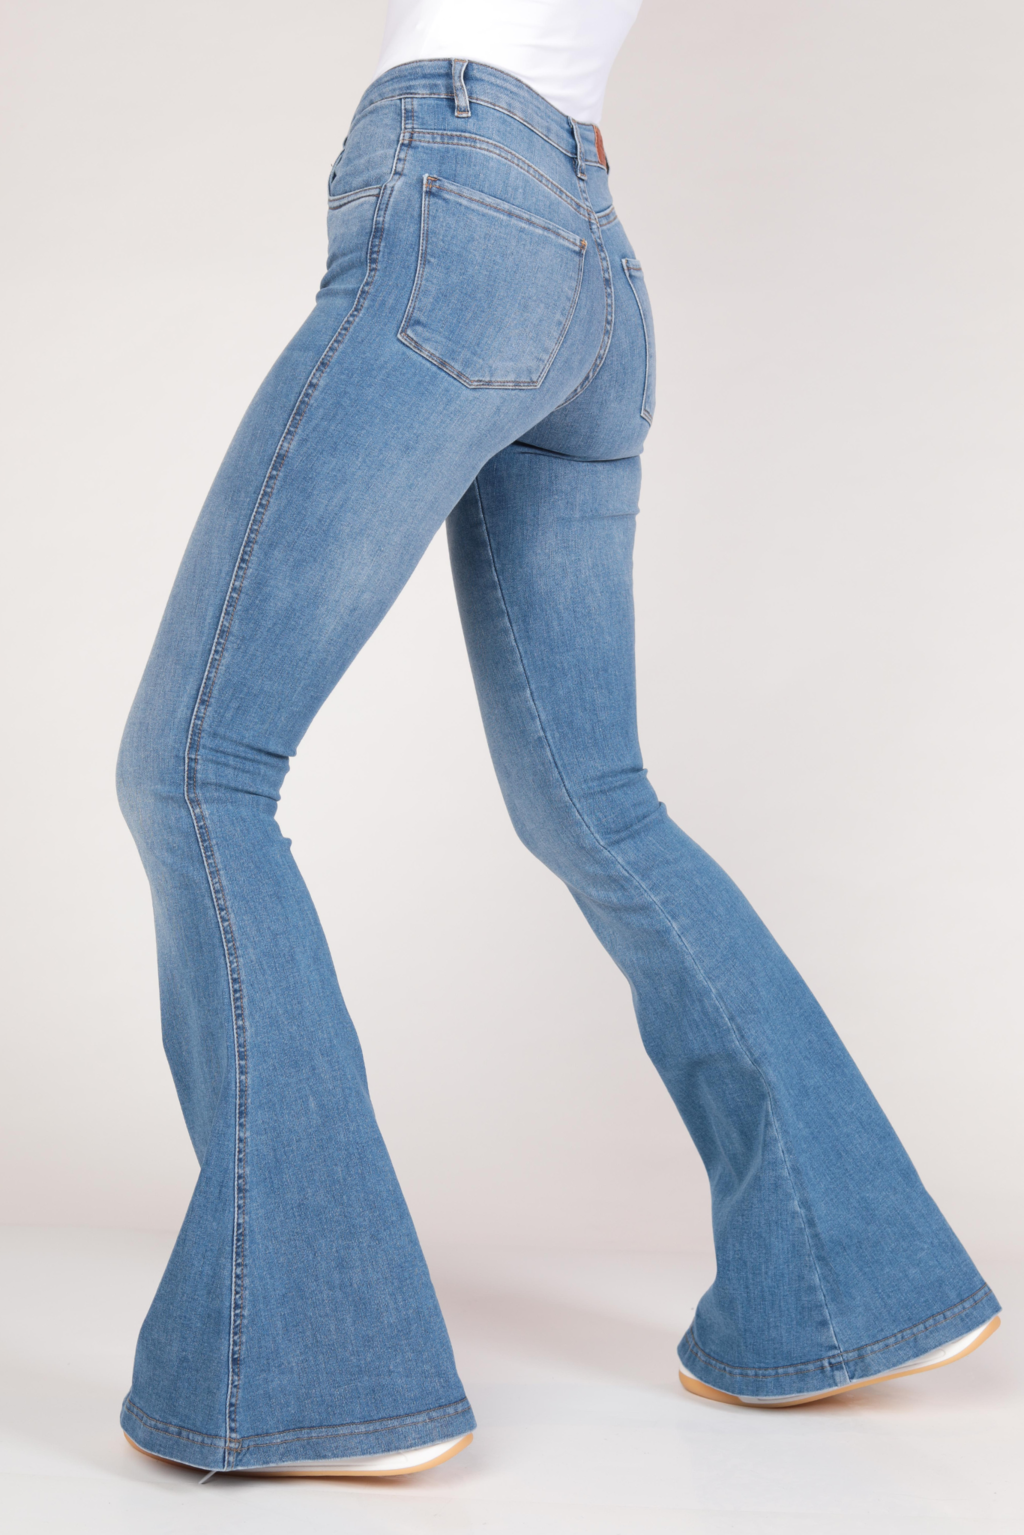 Pantalón Oxford Clásico - Chic Denim  | All about jeans | Shop Online